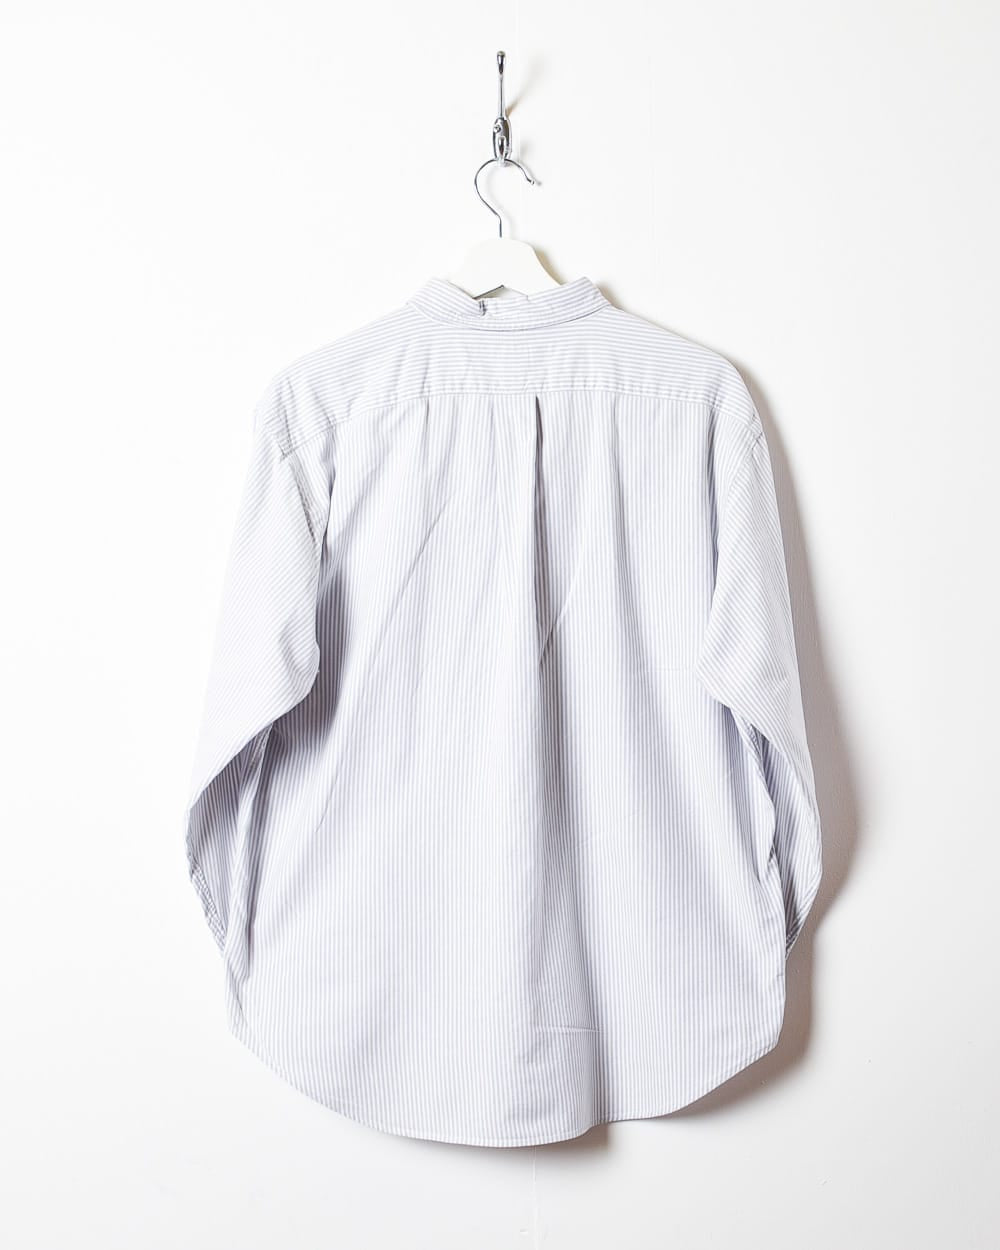 BabyBlue Polo Ralph Lauren Sport Striped Shirt - Medium Women's